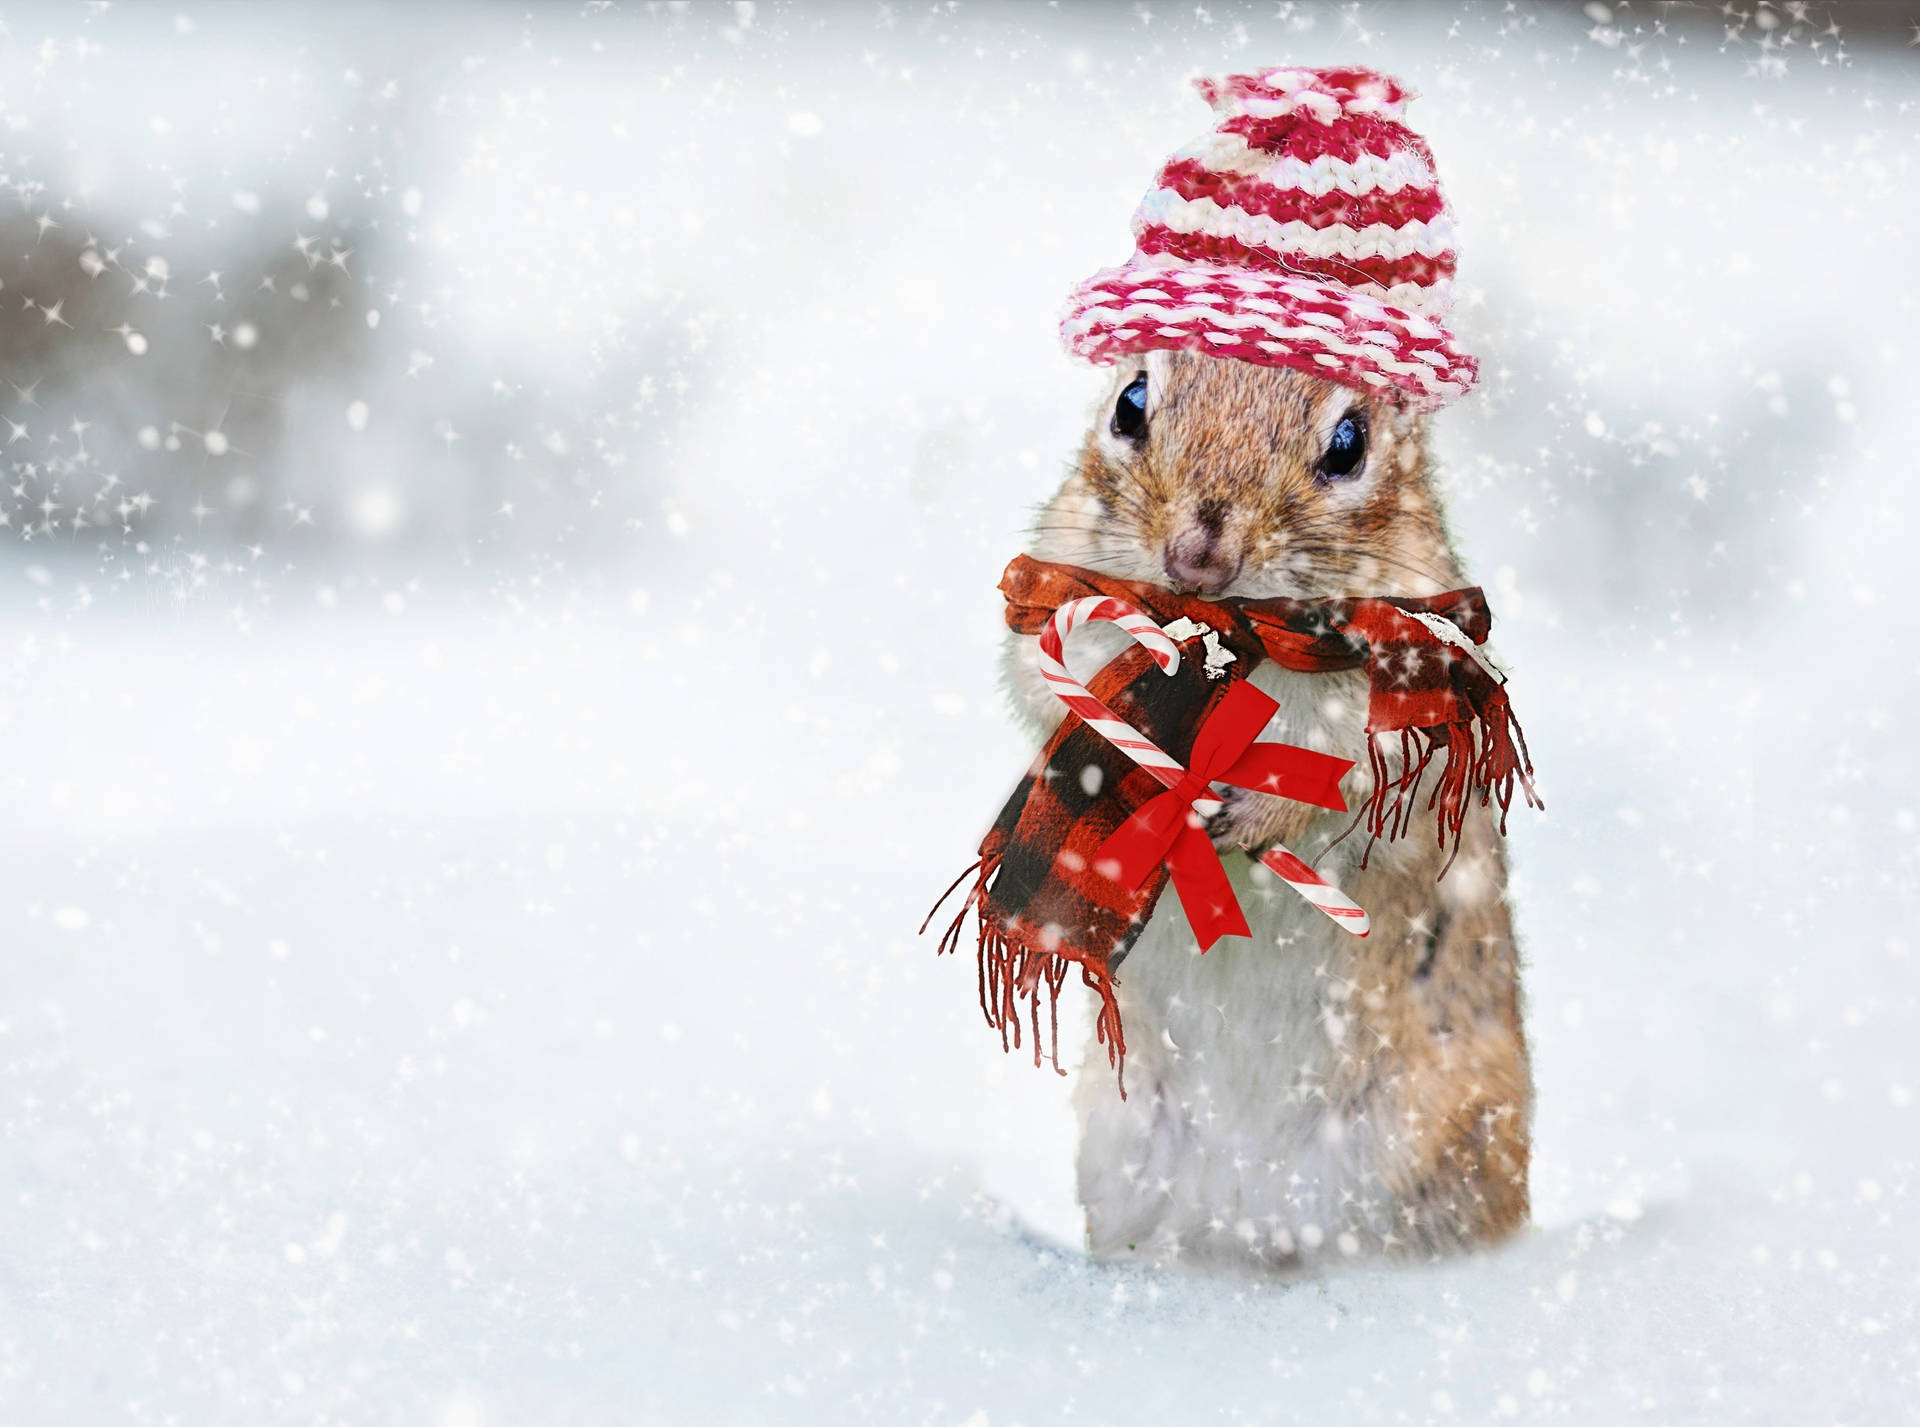 Cute Winter Chipmunk